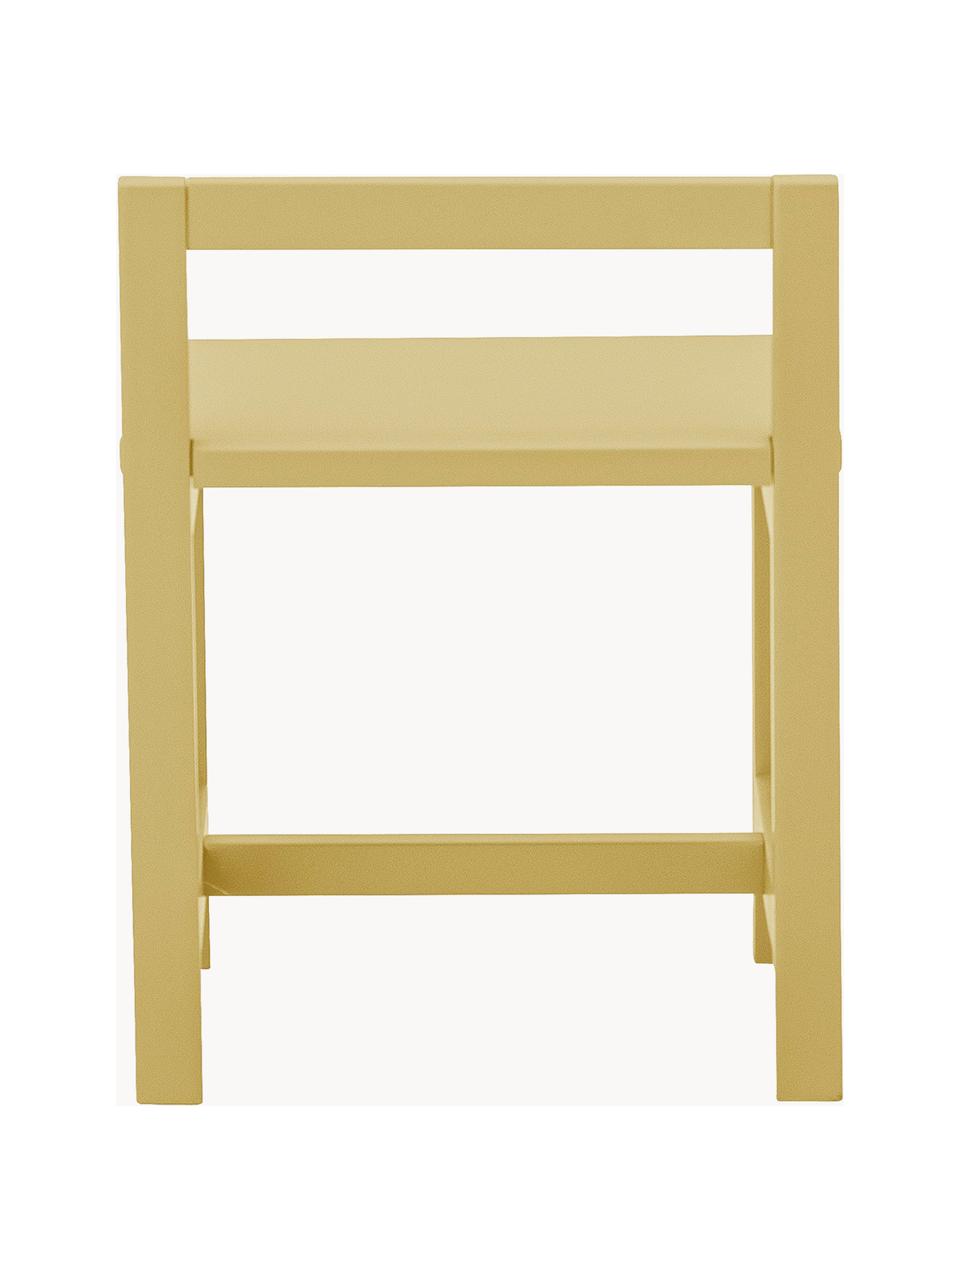 Krzesełko dziecięce Rese, Płyta pilśniowa średniej gęstości (MDF), drewno kauczukowe, Drewno kauczukowe lakierowane na ochrowo, S 32 x G 28 cm